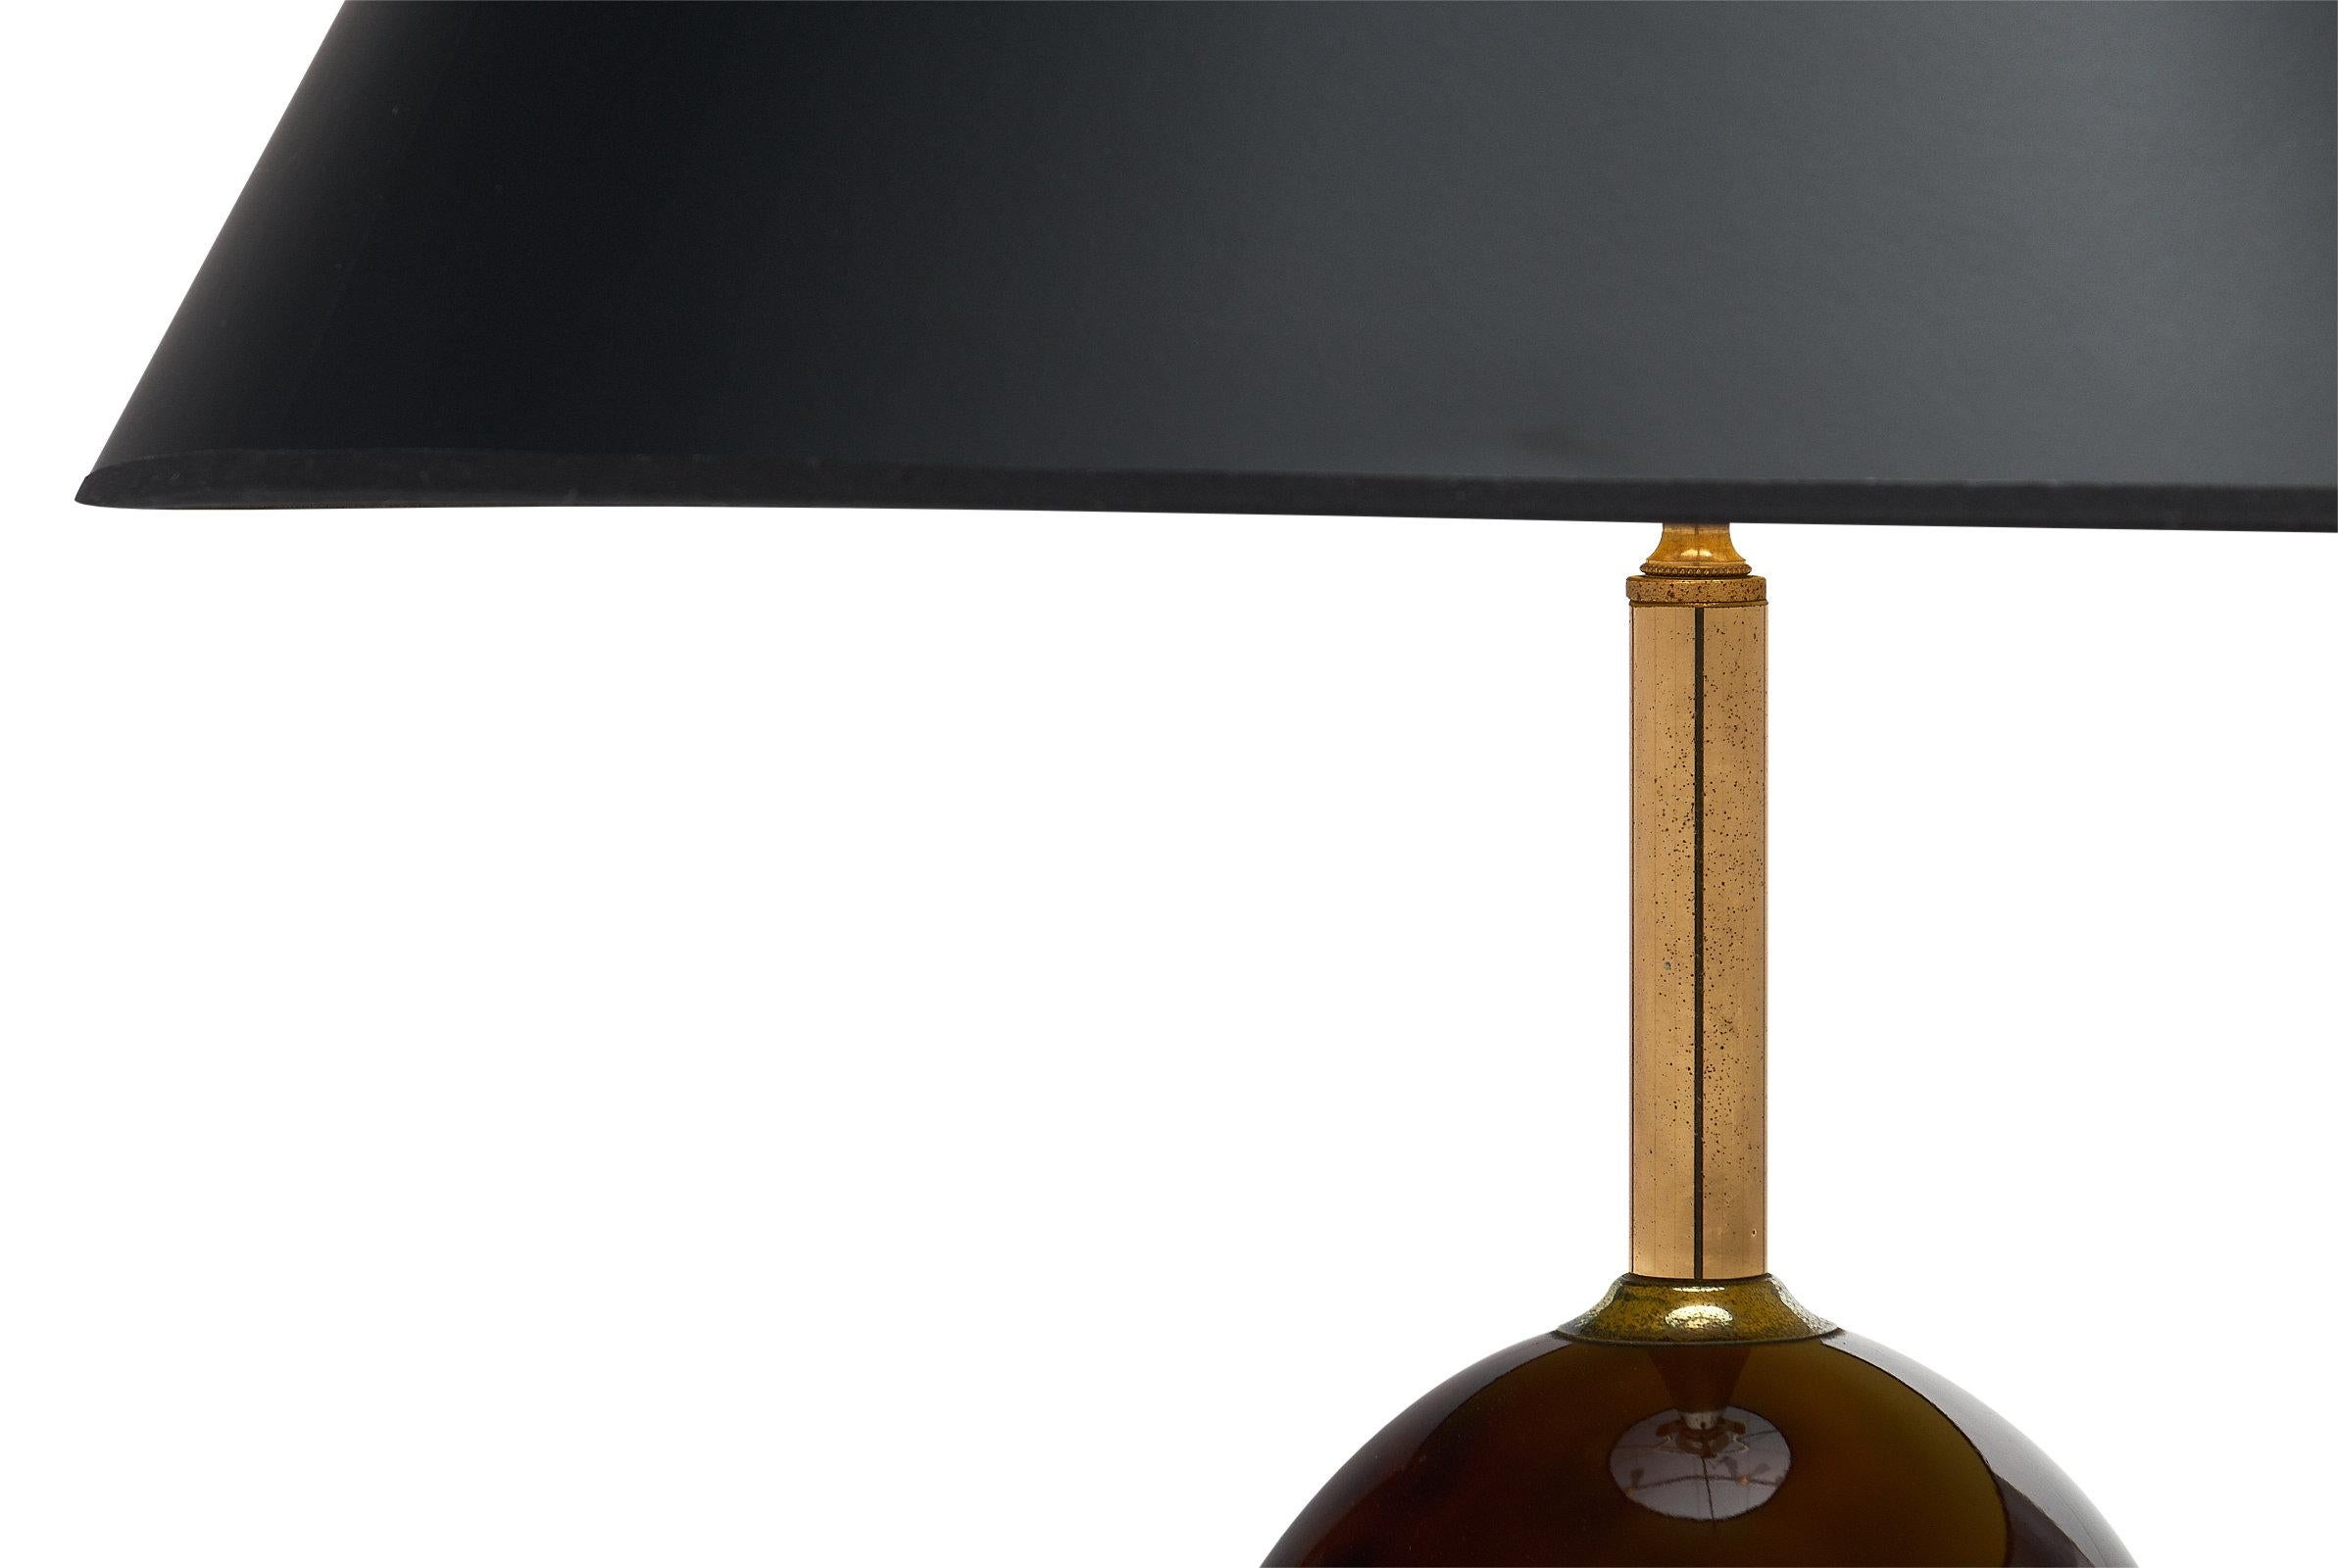 Importante lampe française vintage en bakélite. Cette pièce moderniste présente une forme ovoïde en bakélite combinée à une base en bois ébénisé et à des détails en laiton. Il a été nouvellement câblé pour répondre aux normes américaines.